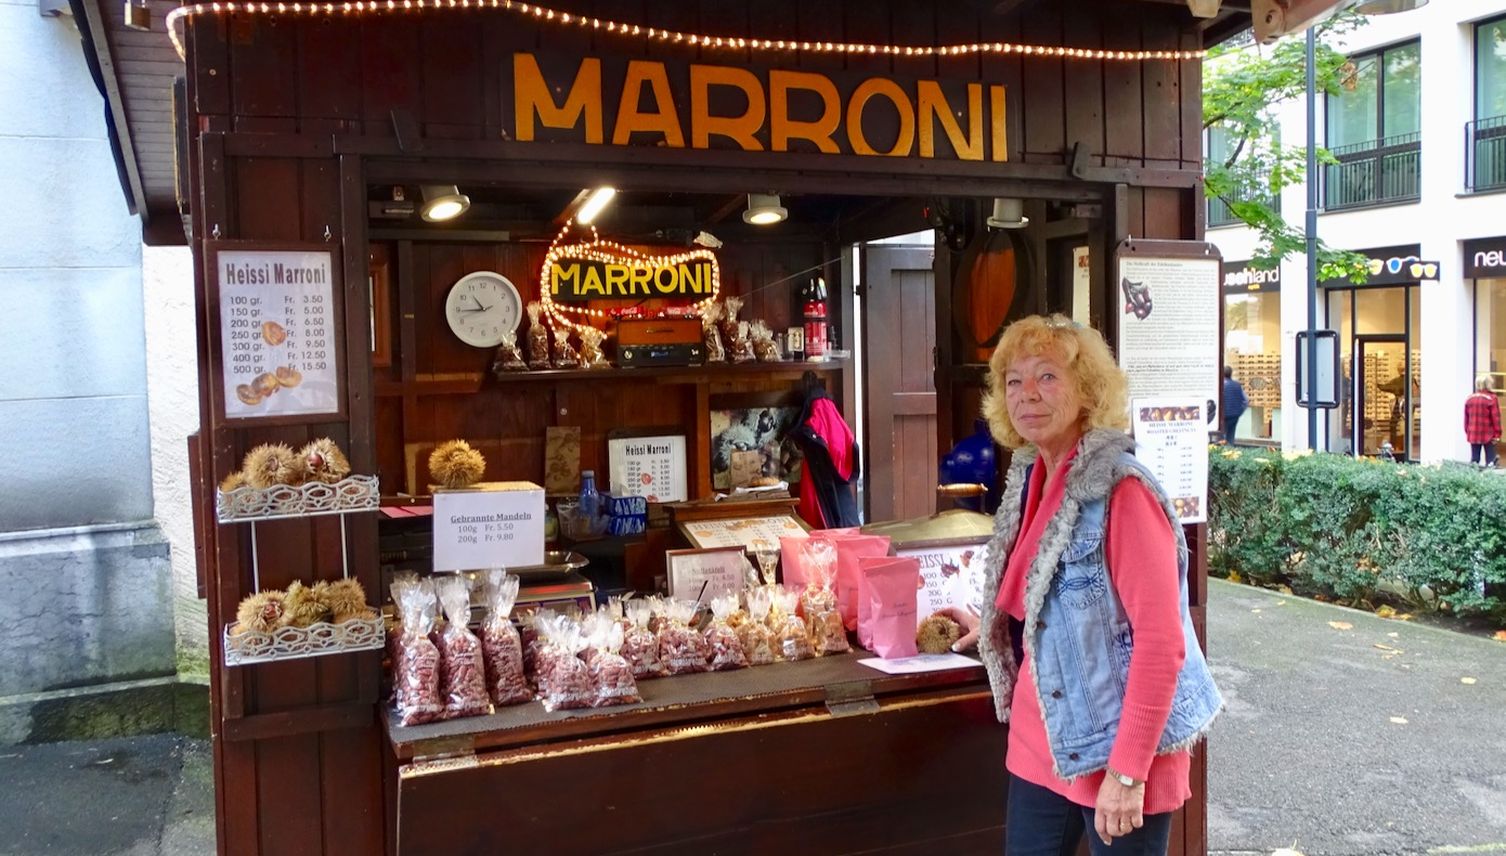 Happy End für Luzerner Marroniverkäuferin